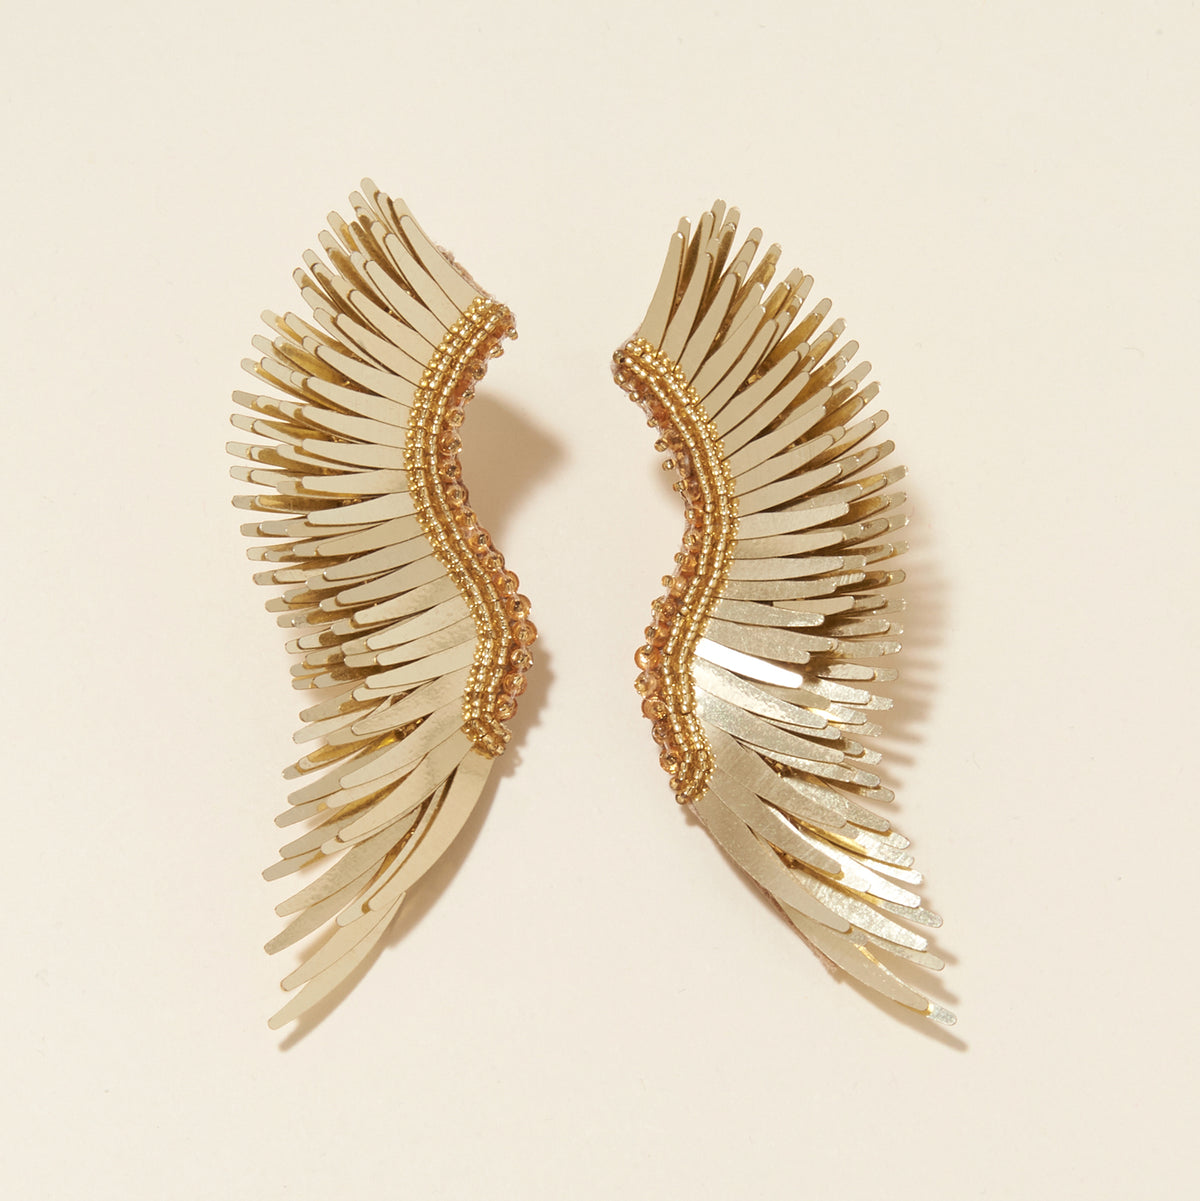 Mignonne Gavigan Dottie Lux Earrings - Gold/Clear